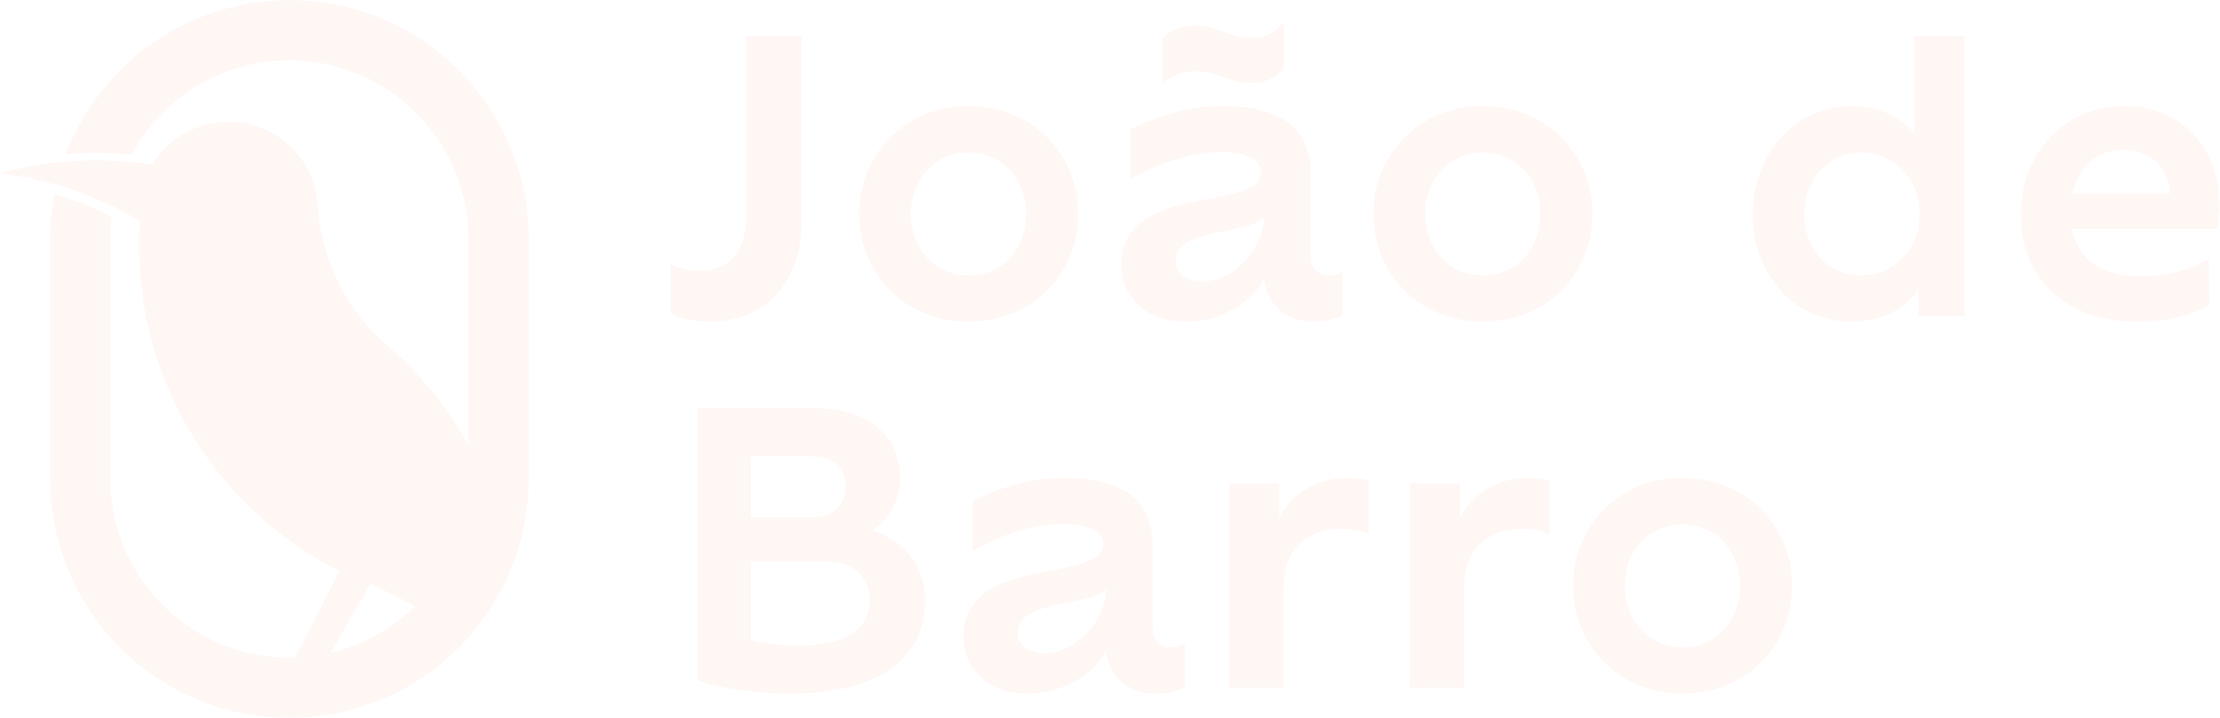 João de Barro